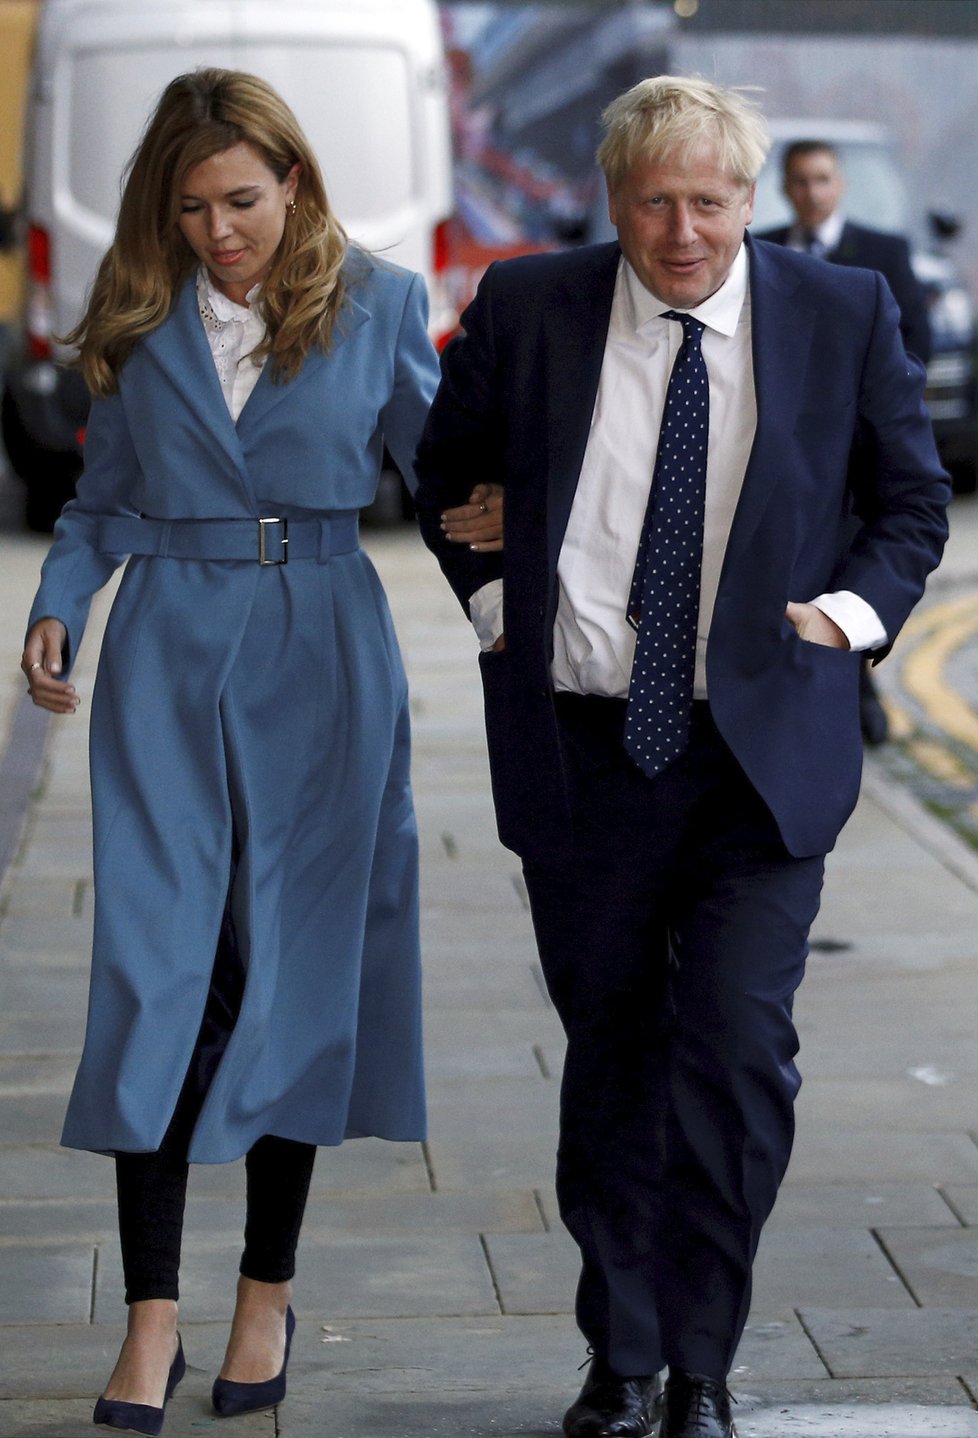 Britský premiér Boris Johnson s přítelkyní Carrie Symondsovou